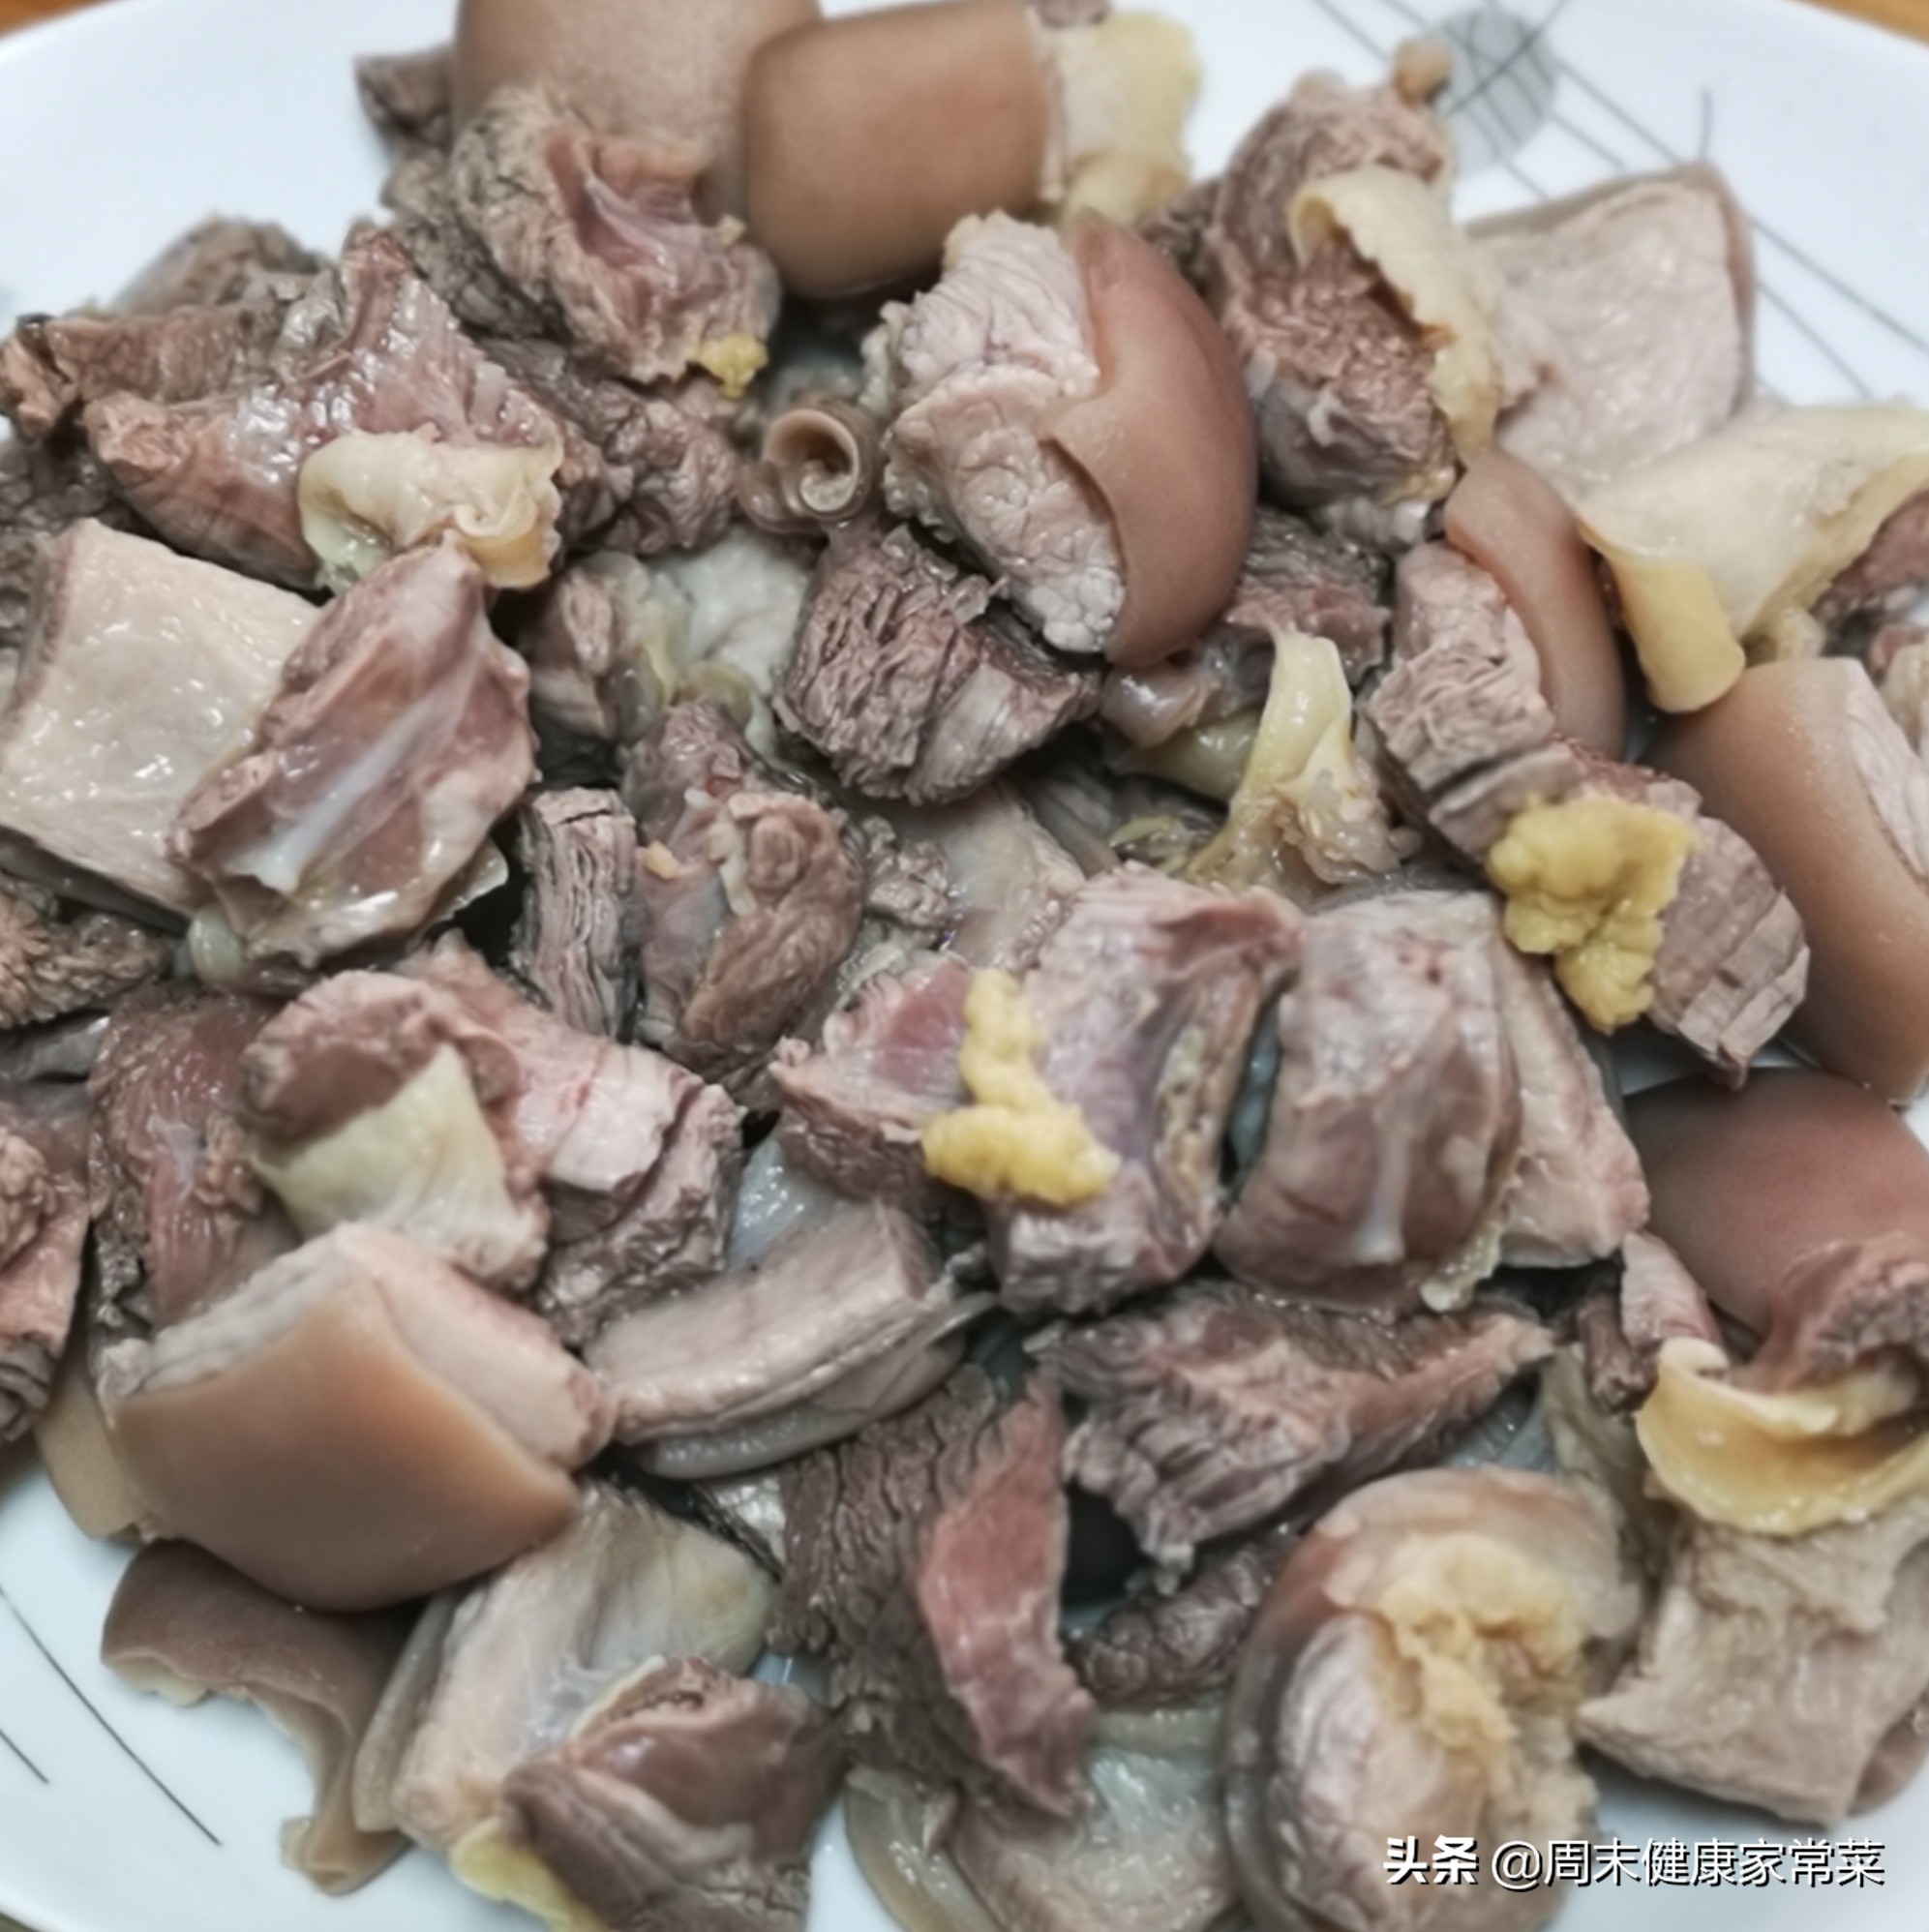 只要有肉，广东人就能将其变成“煲”,来看看一锅驴肉煲的诱惑